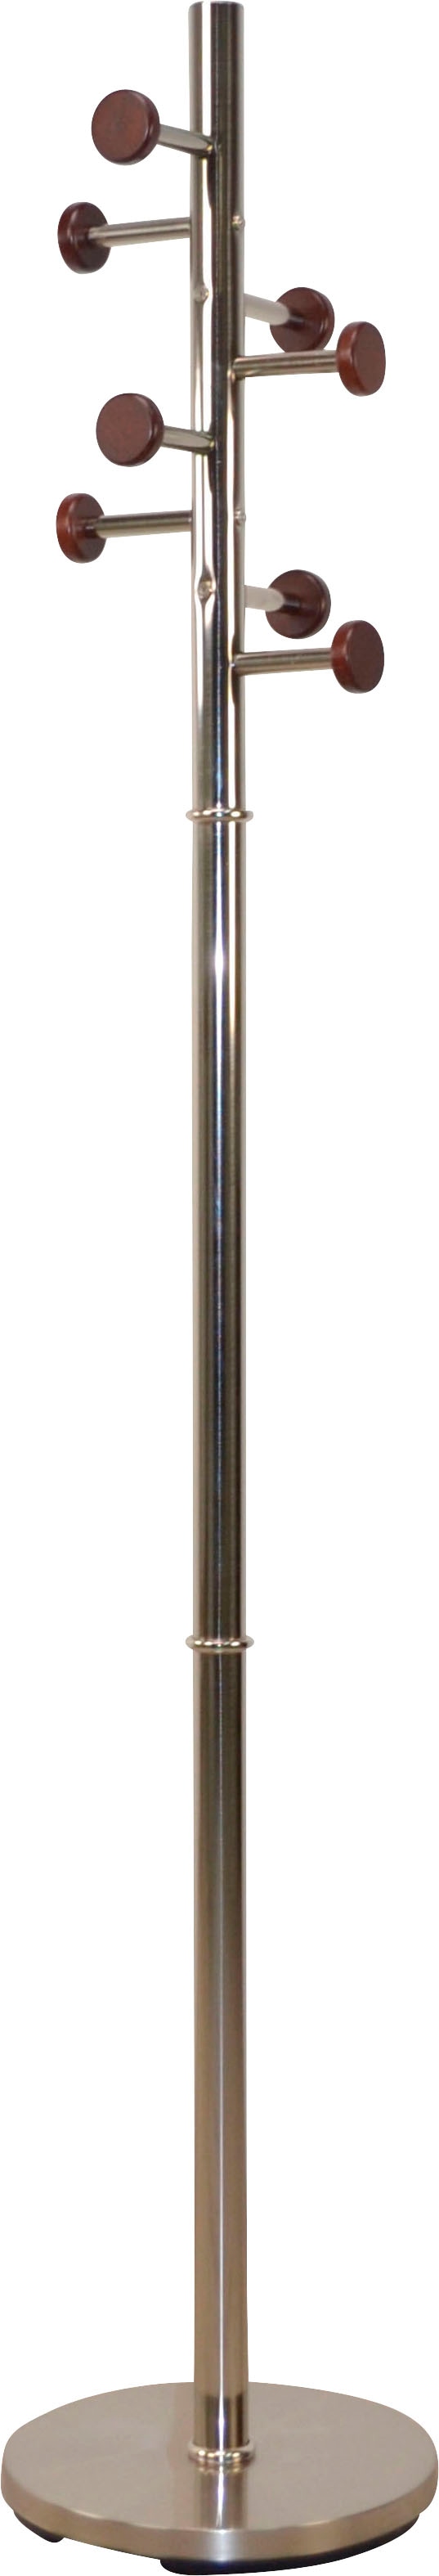 Garderobenständer, aus Metall, Höhe 172 cm, 8 Haken